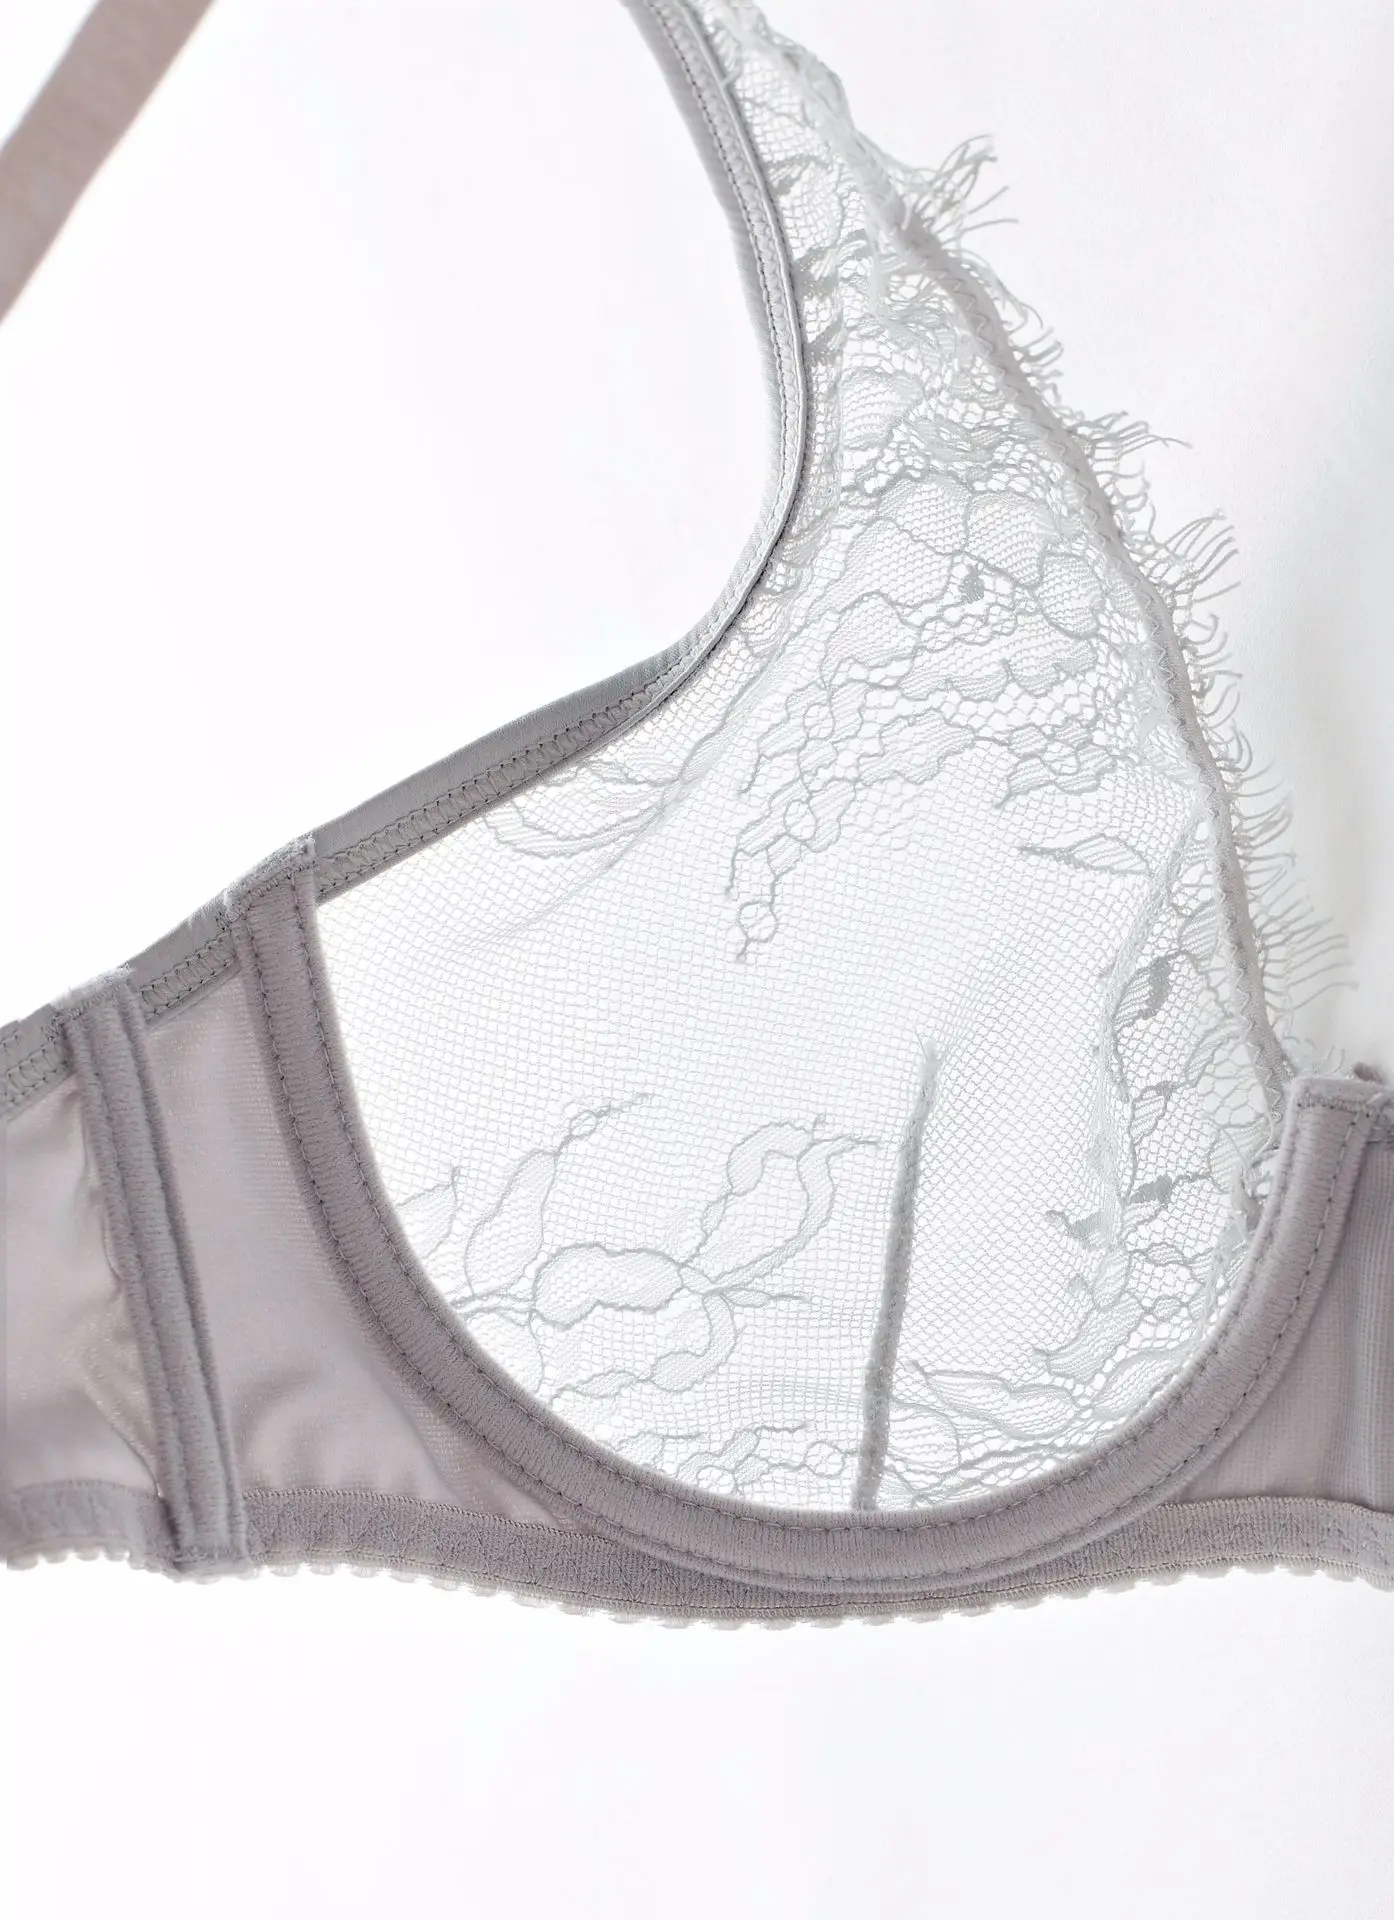 Экзотические наборы прозрачное сексуальное кружево с ресничками белье бюстгальтер набор для женщин Дамское белье сексуальный комплект